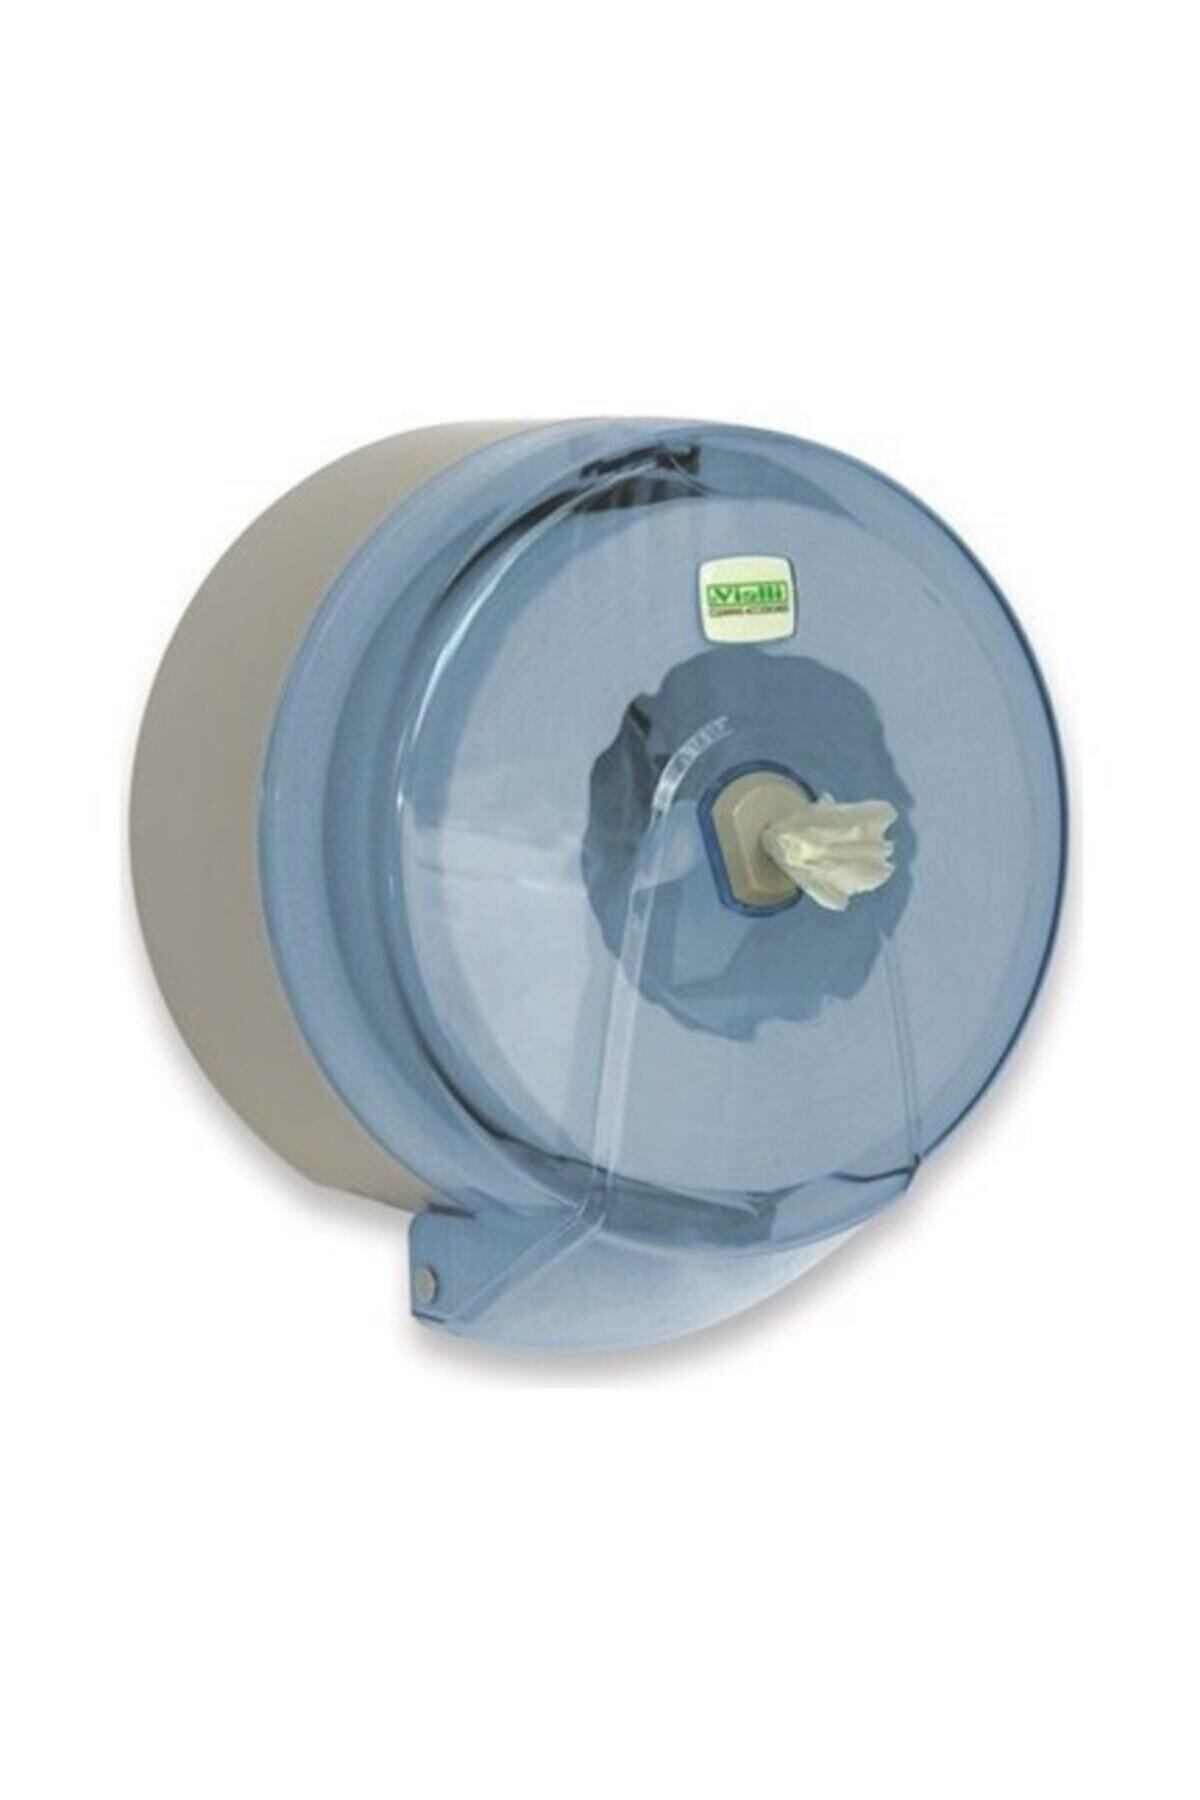 Vialli K9t Büyük Içten Çekmeli Tuvalet Kağıt Dispenseri Aparatı - Şeffaf - Plastik - Içten Çekmeli